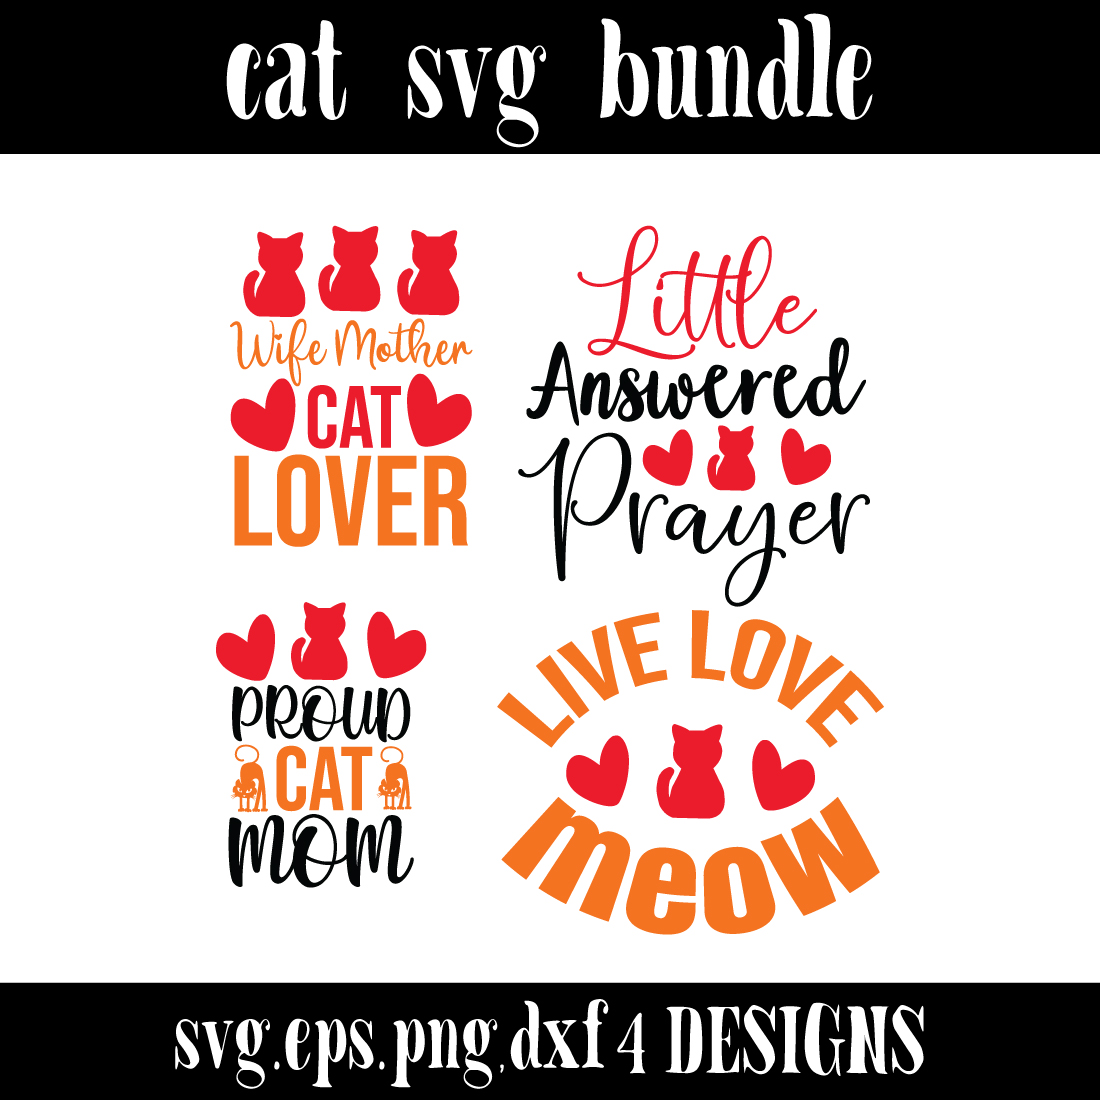 4 cat SVG Design Bundle cover image.